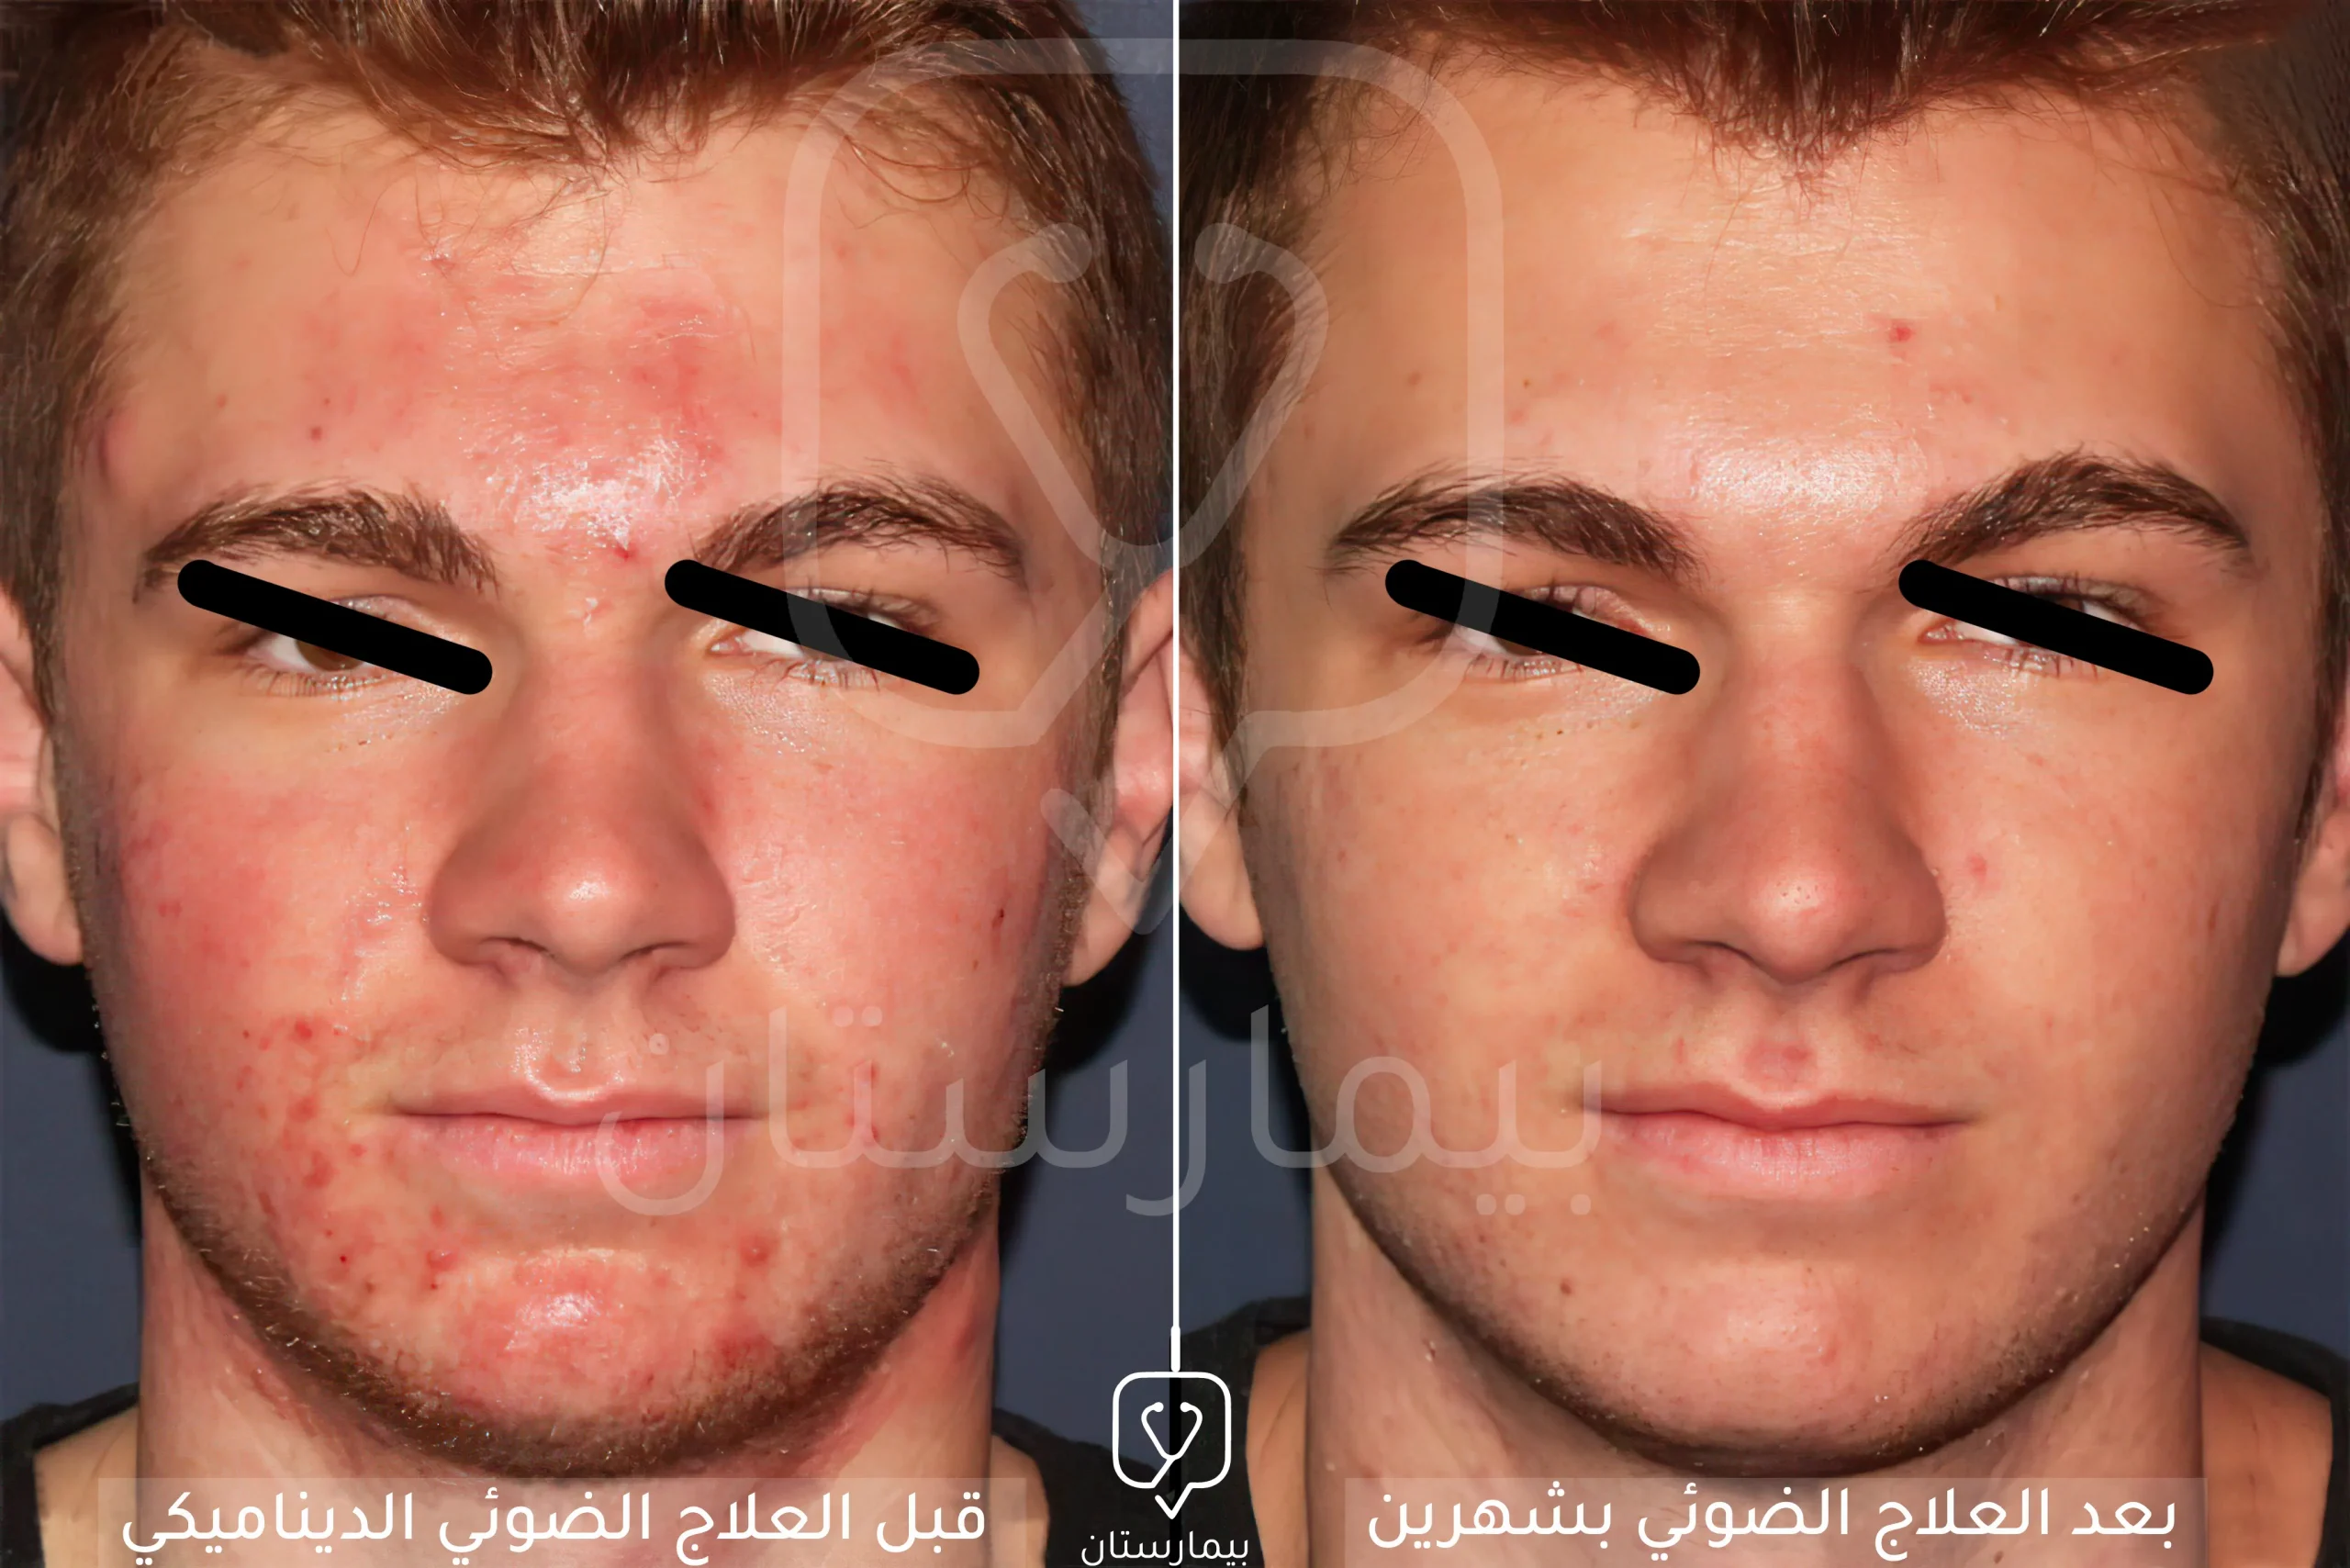 تظهر هذه الصورة تأثير العلاج الضوئي الديناميكي وقدرته على إزالة الآفات الجلدية بشكل فعال